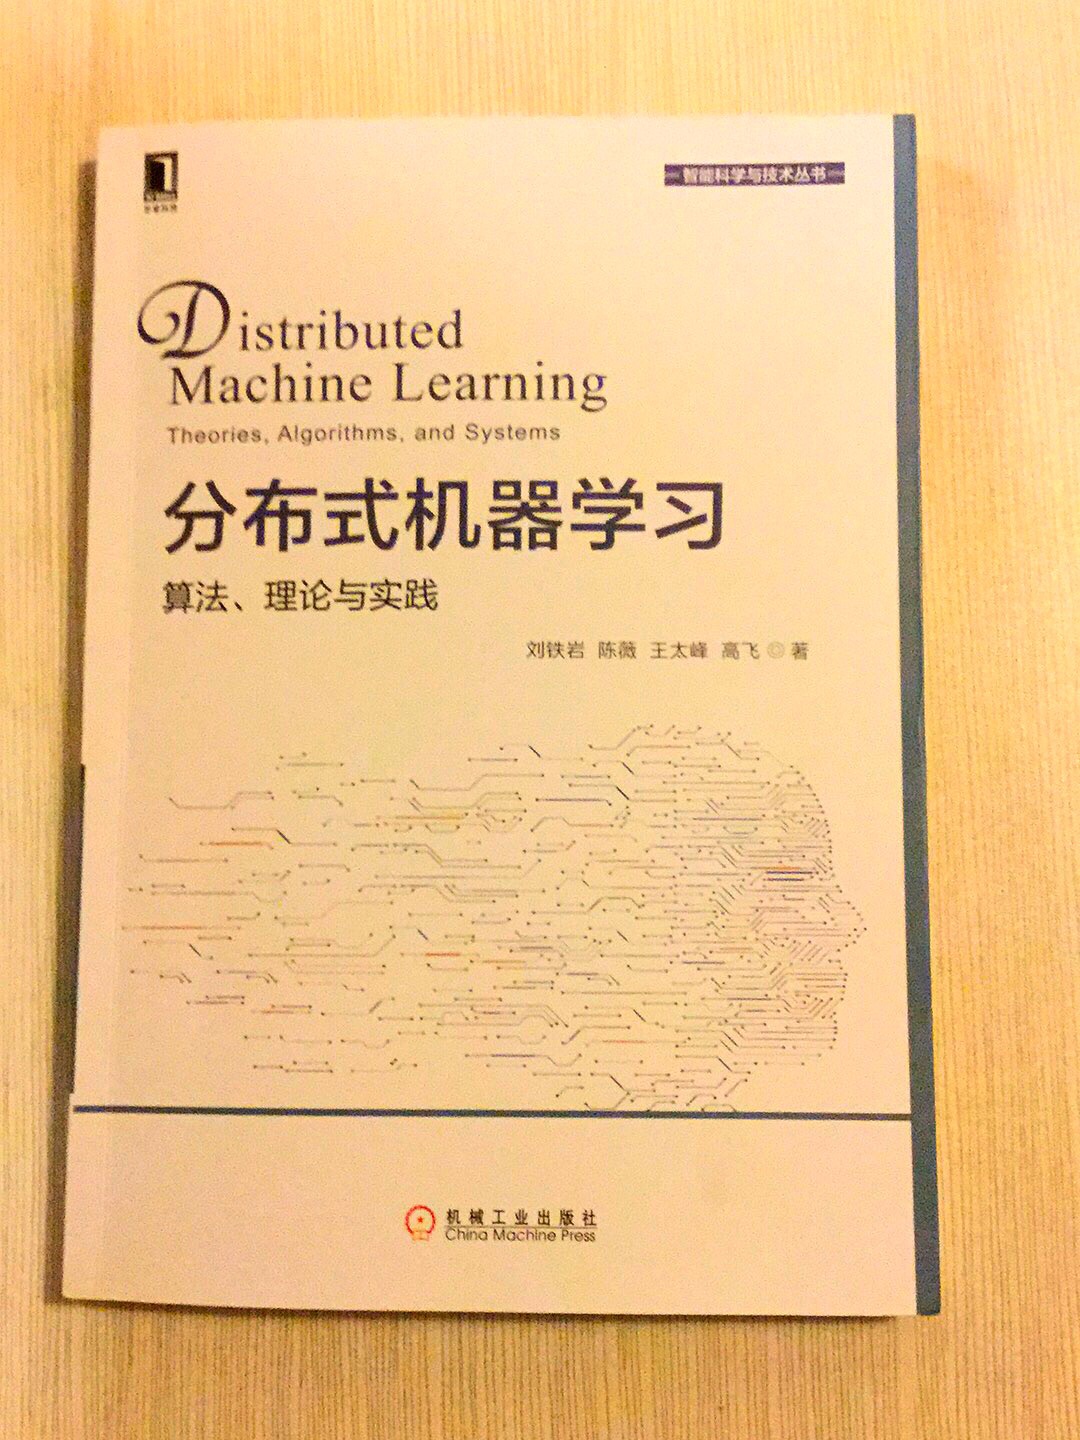 分布式机器学习，好好学学，是正版书，物流很快